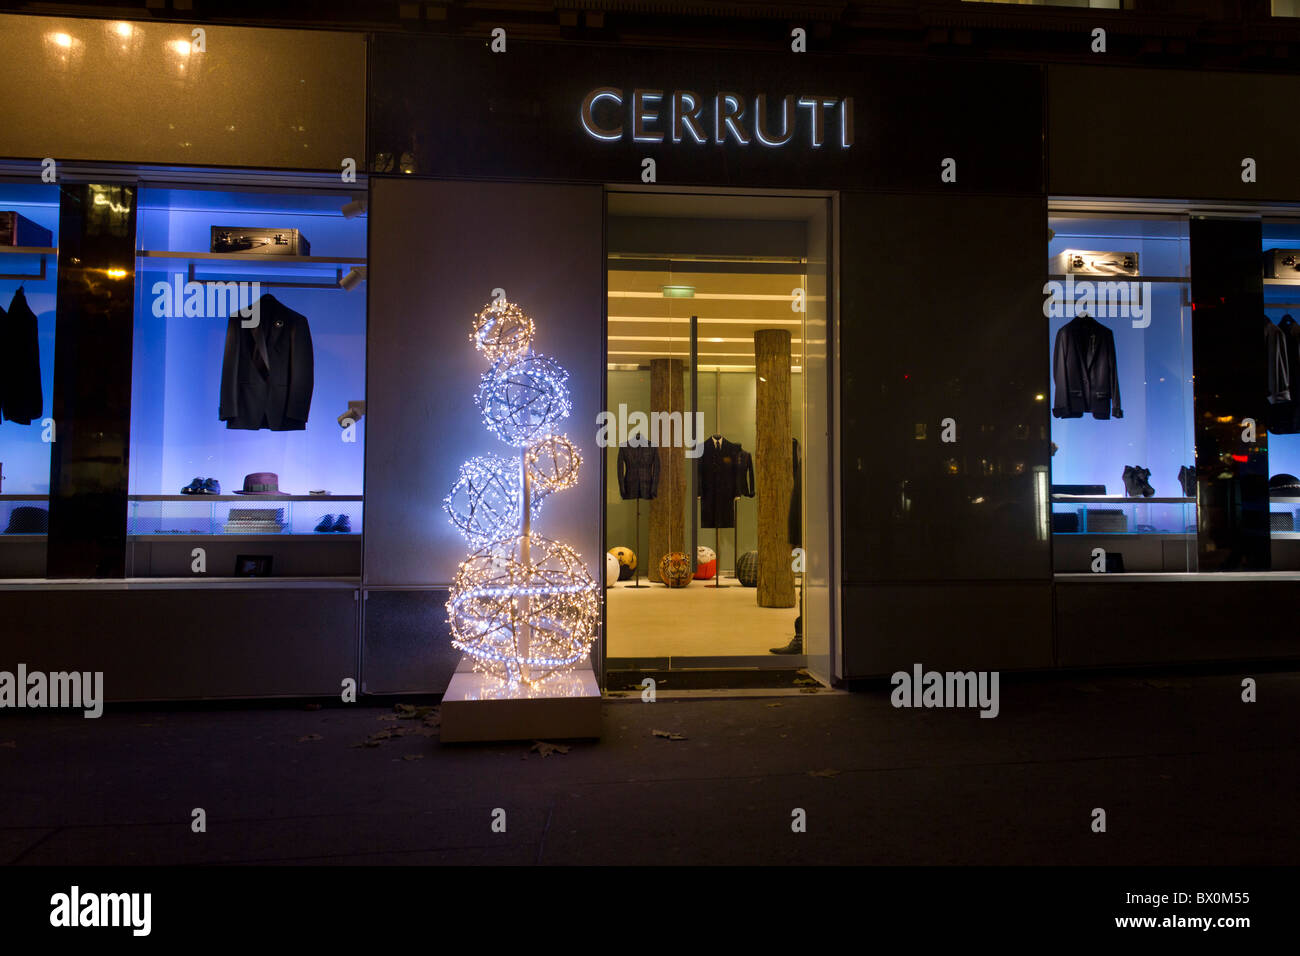 Boutique de mode de luxe Cerruti avec décoration de Noël, rue Royale, Paris, France Banque D'Images